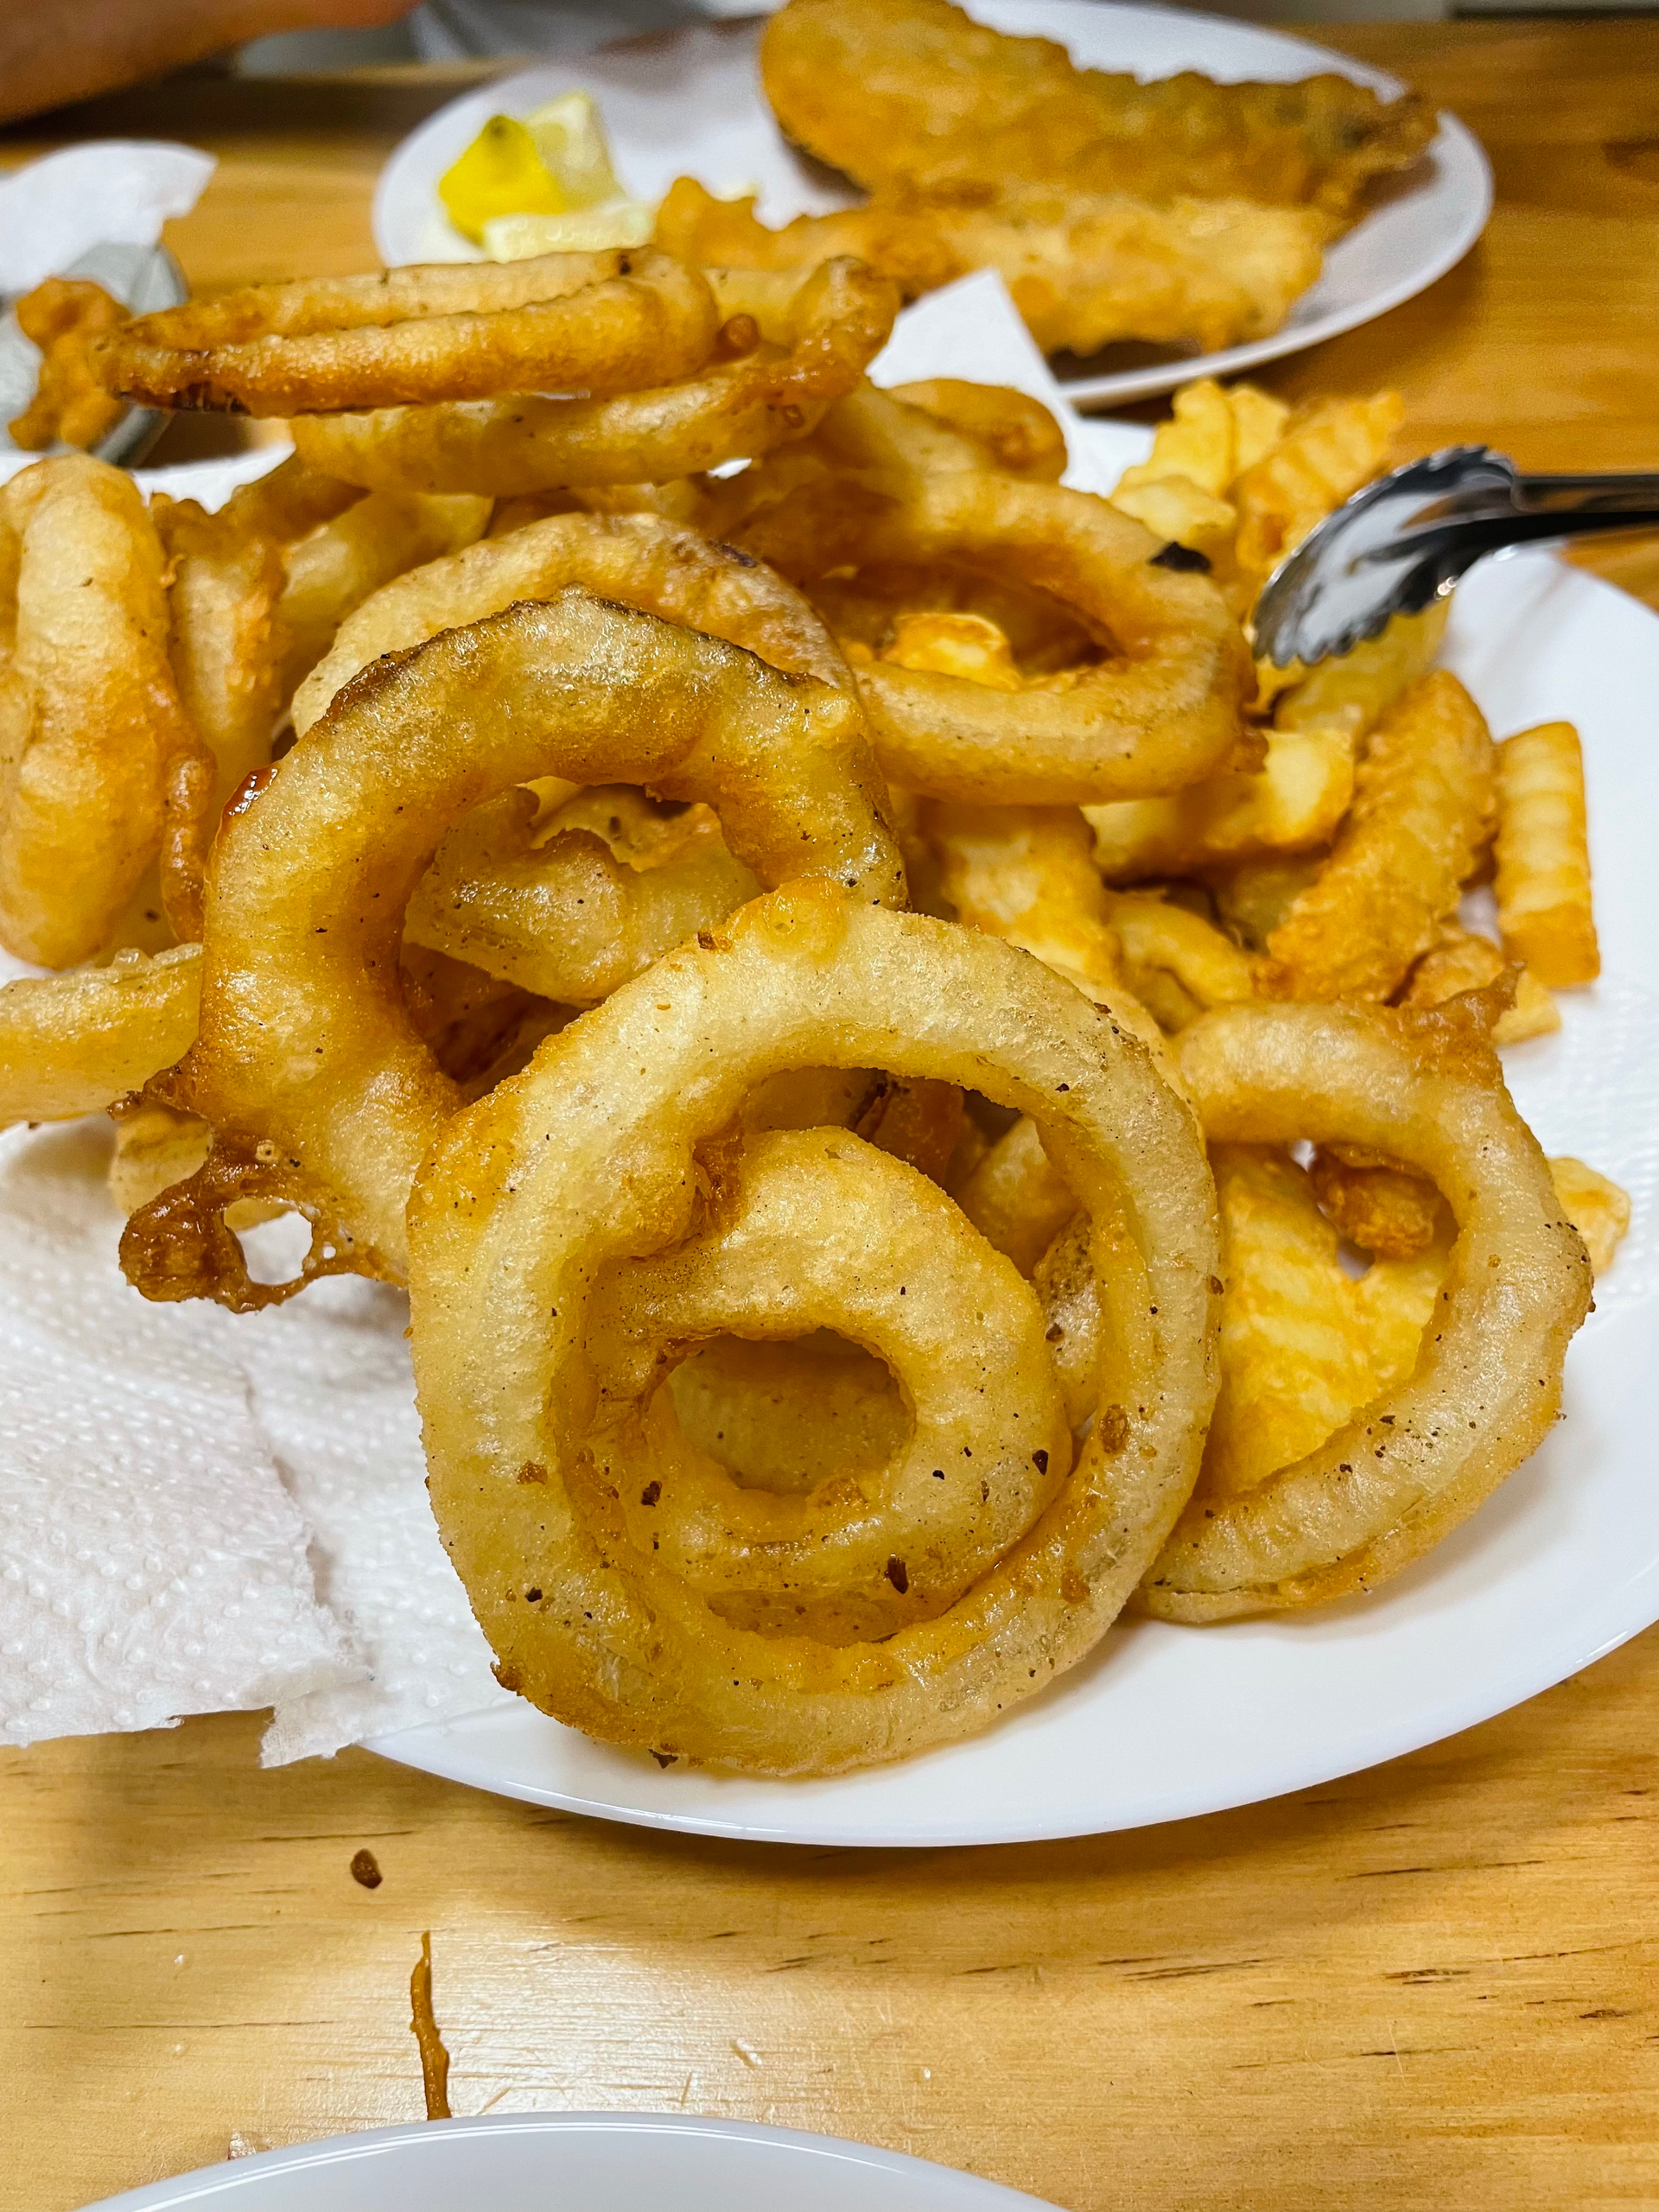 洋葱圈onion rings